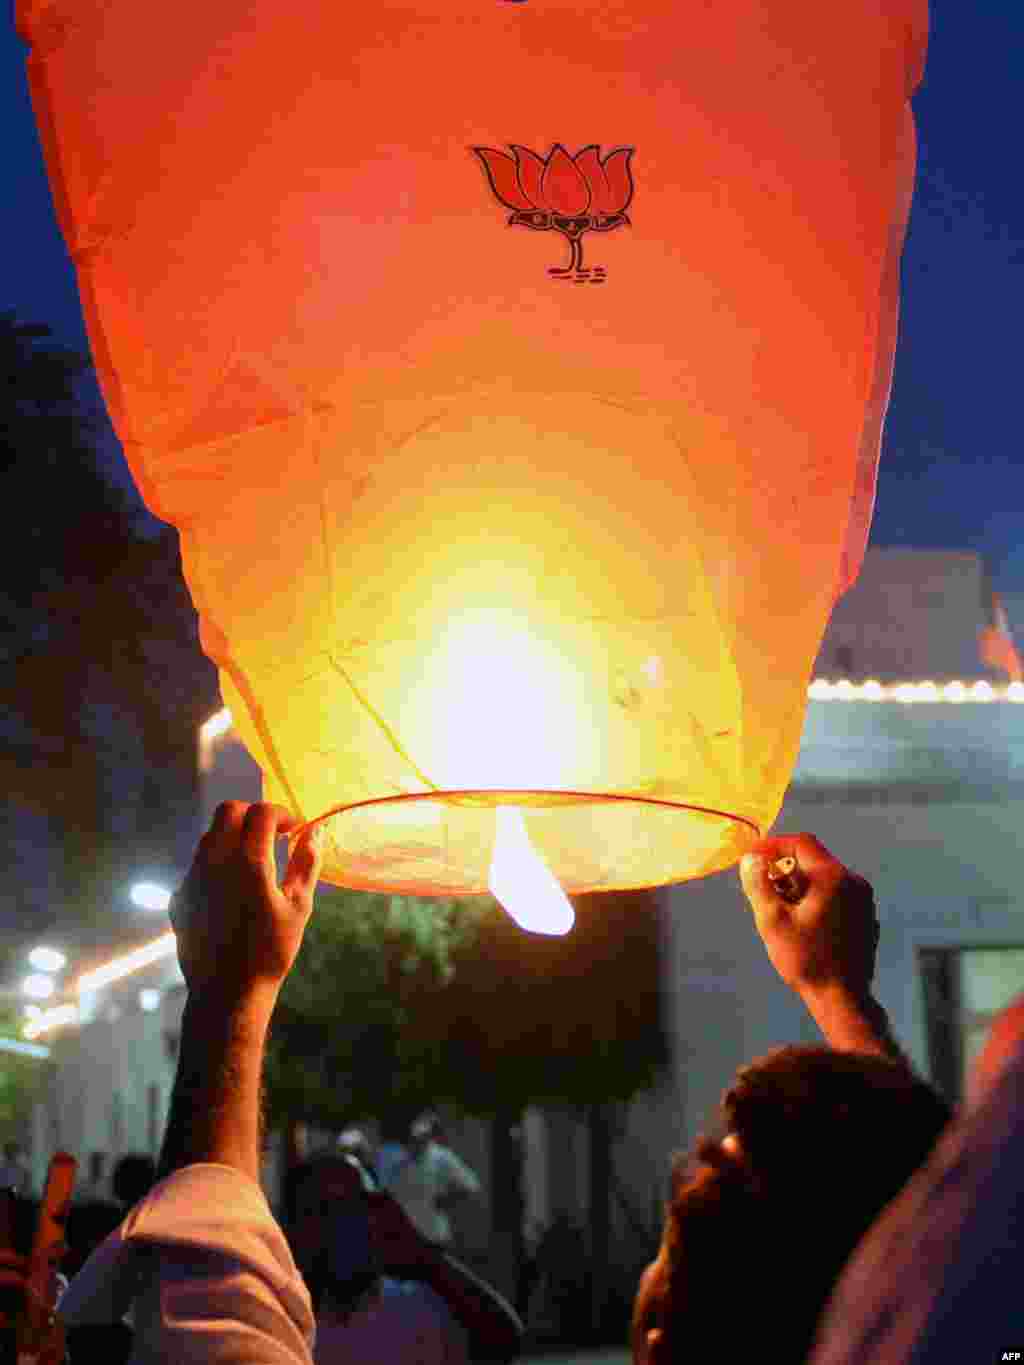 Một người ủng hộ Đảng Bharatiya Janata (BJP) của Ấn Độ chuẩn bị thả chiếc đèn trời trang trí bằng biểu tượng hoa sen của BJP tại trụ sở đảng ở New Delhi.